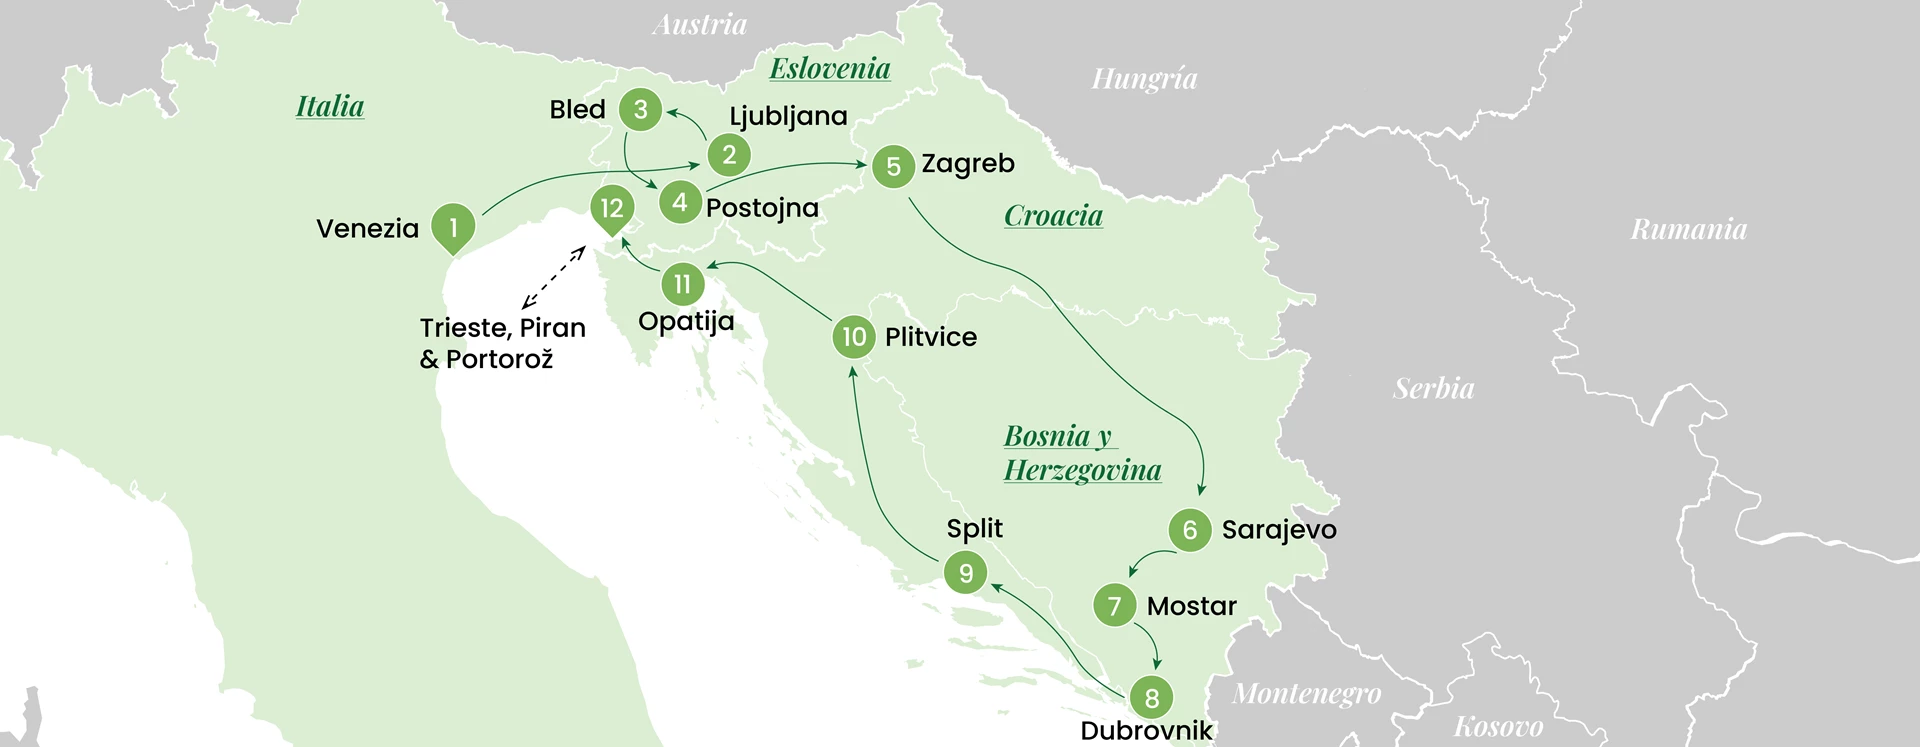 Mapa Eslovenia Croacia